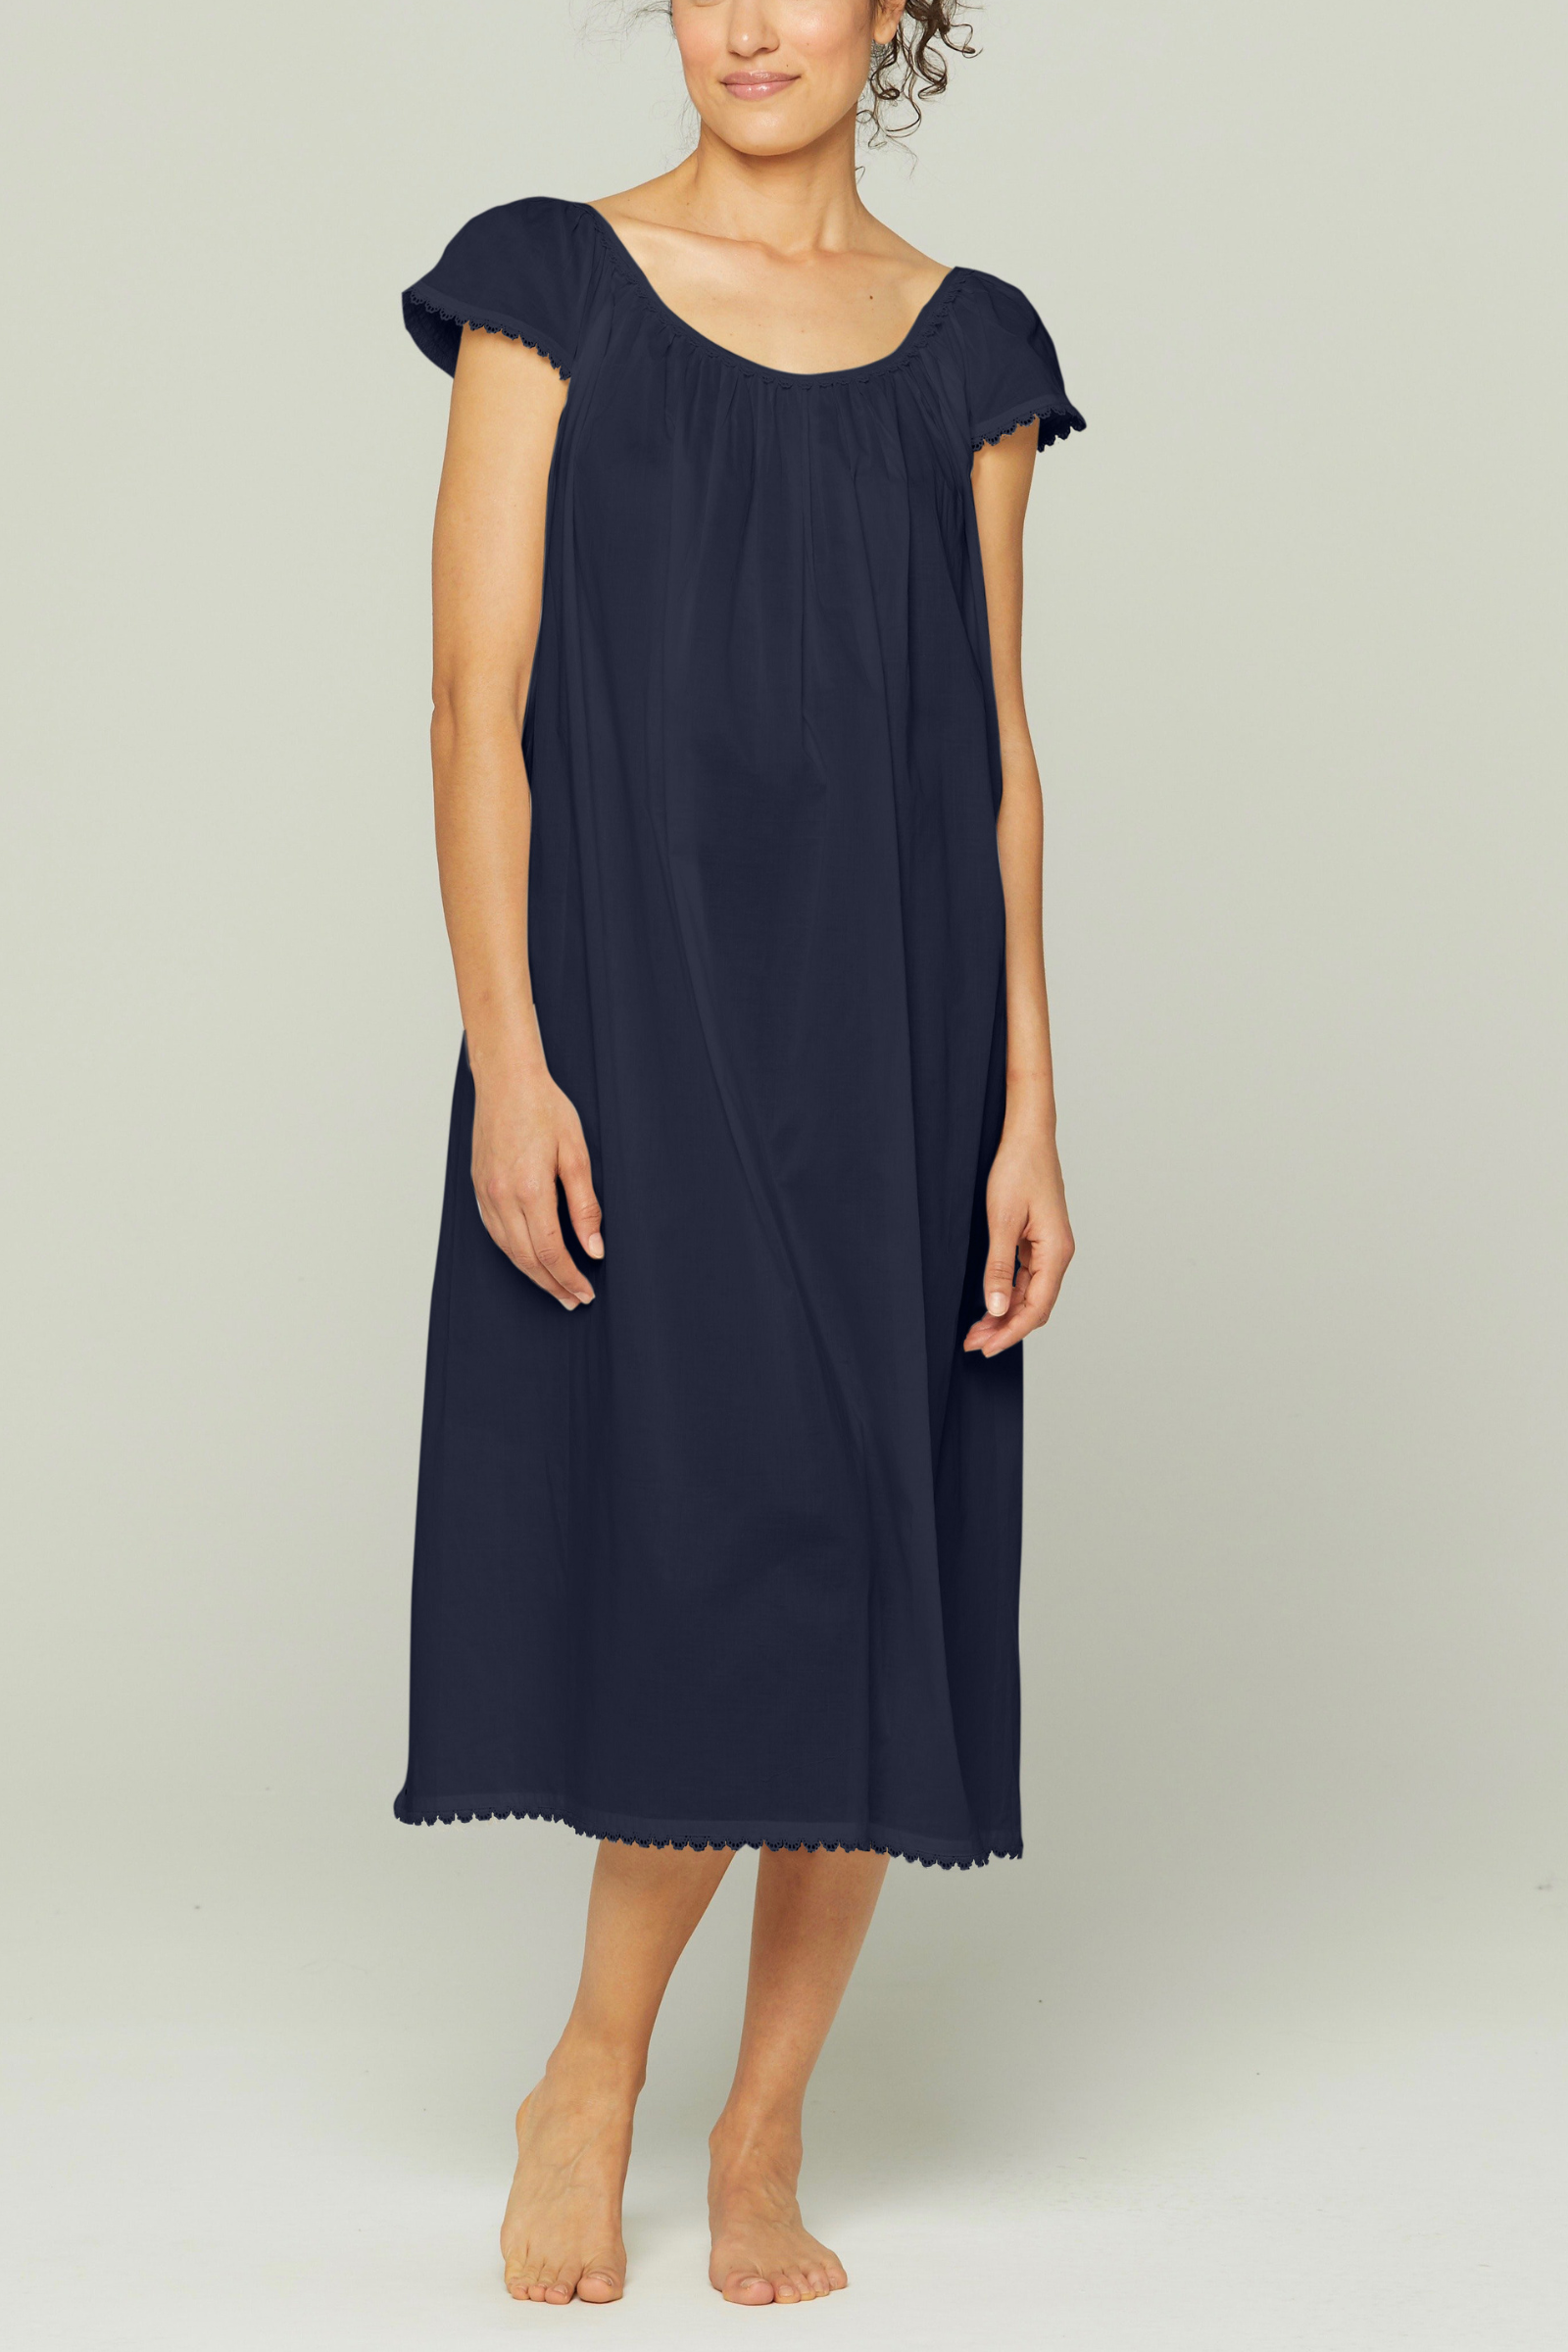 Long Cotton Nightgown with Flower Trim - White – Pour Les Femmes